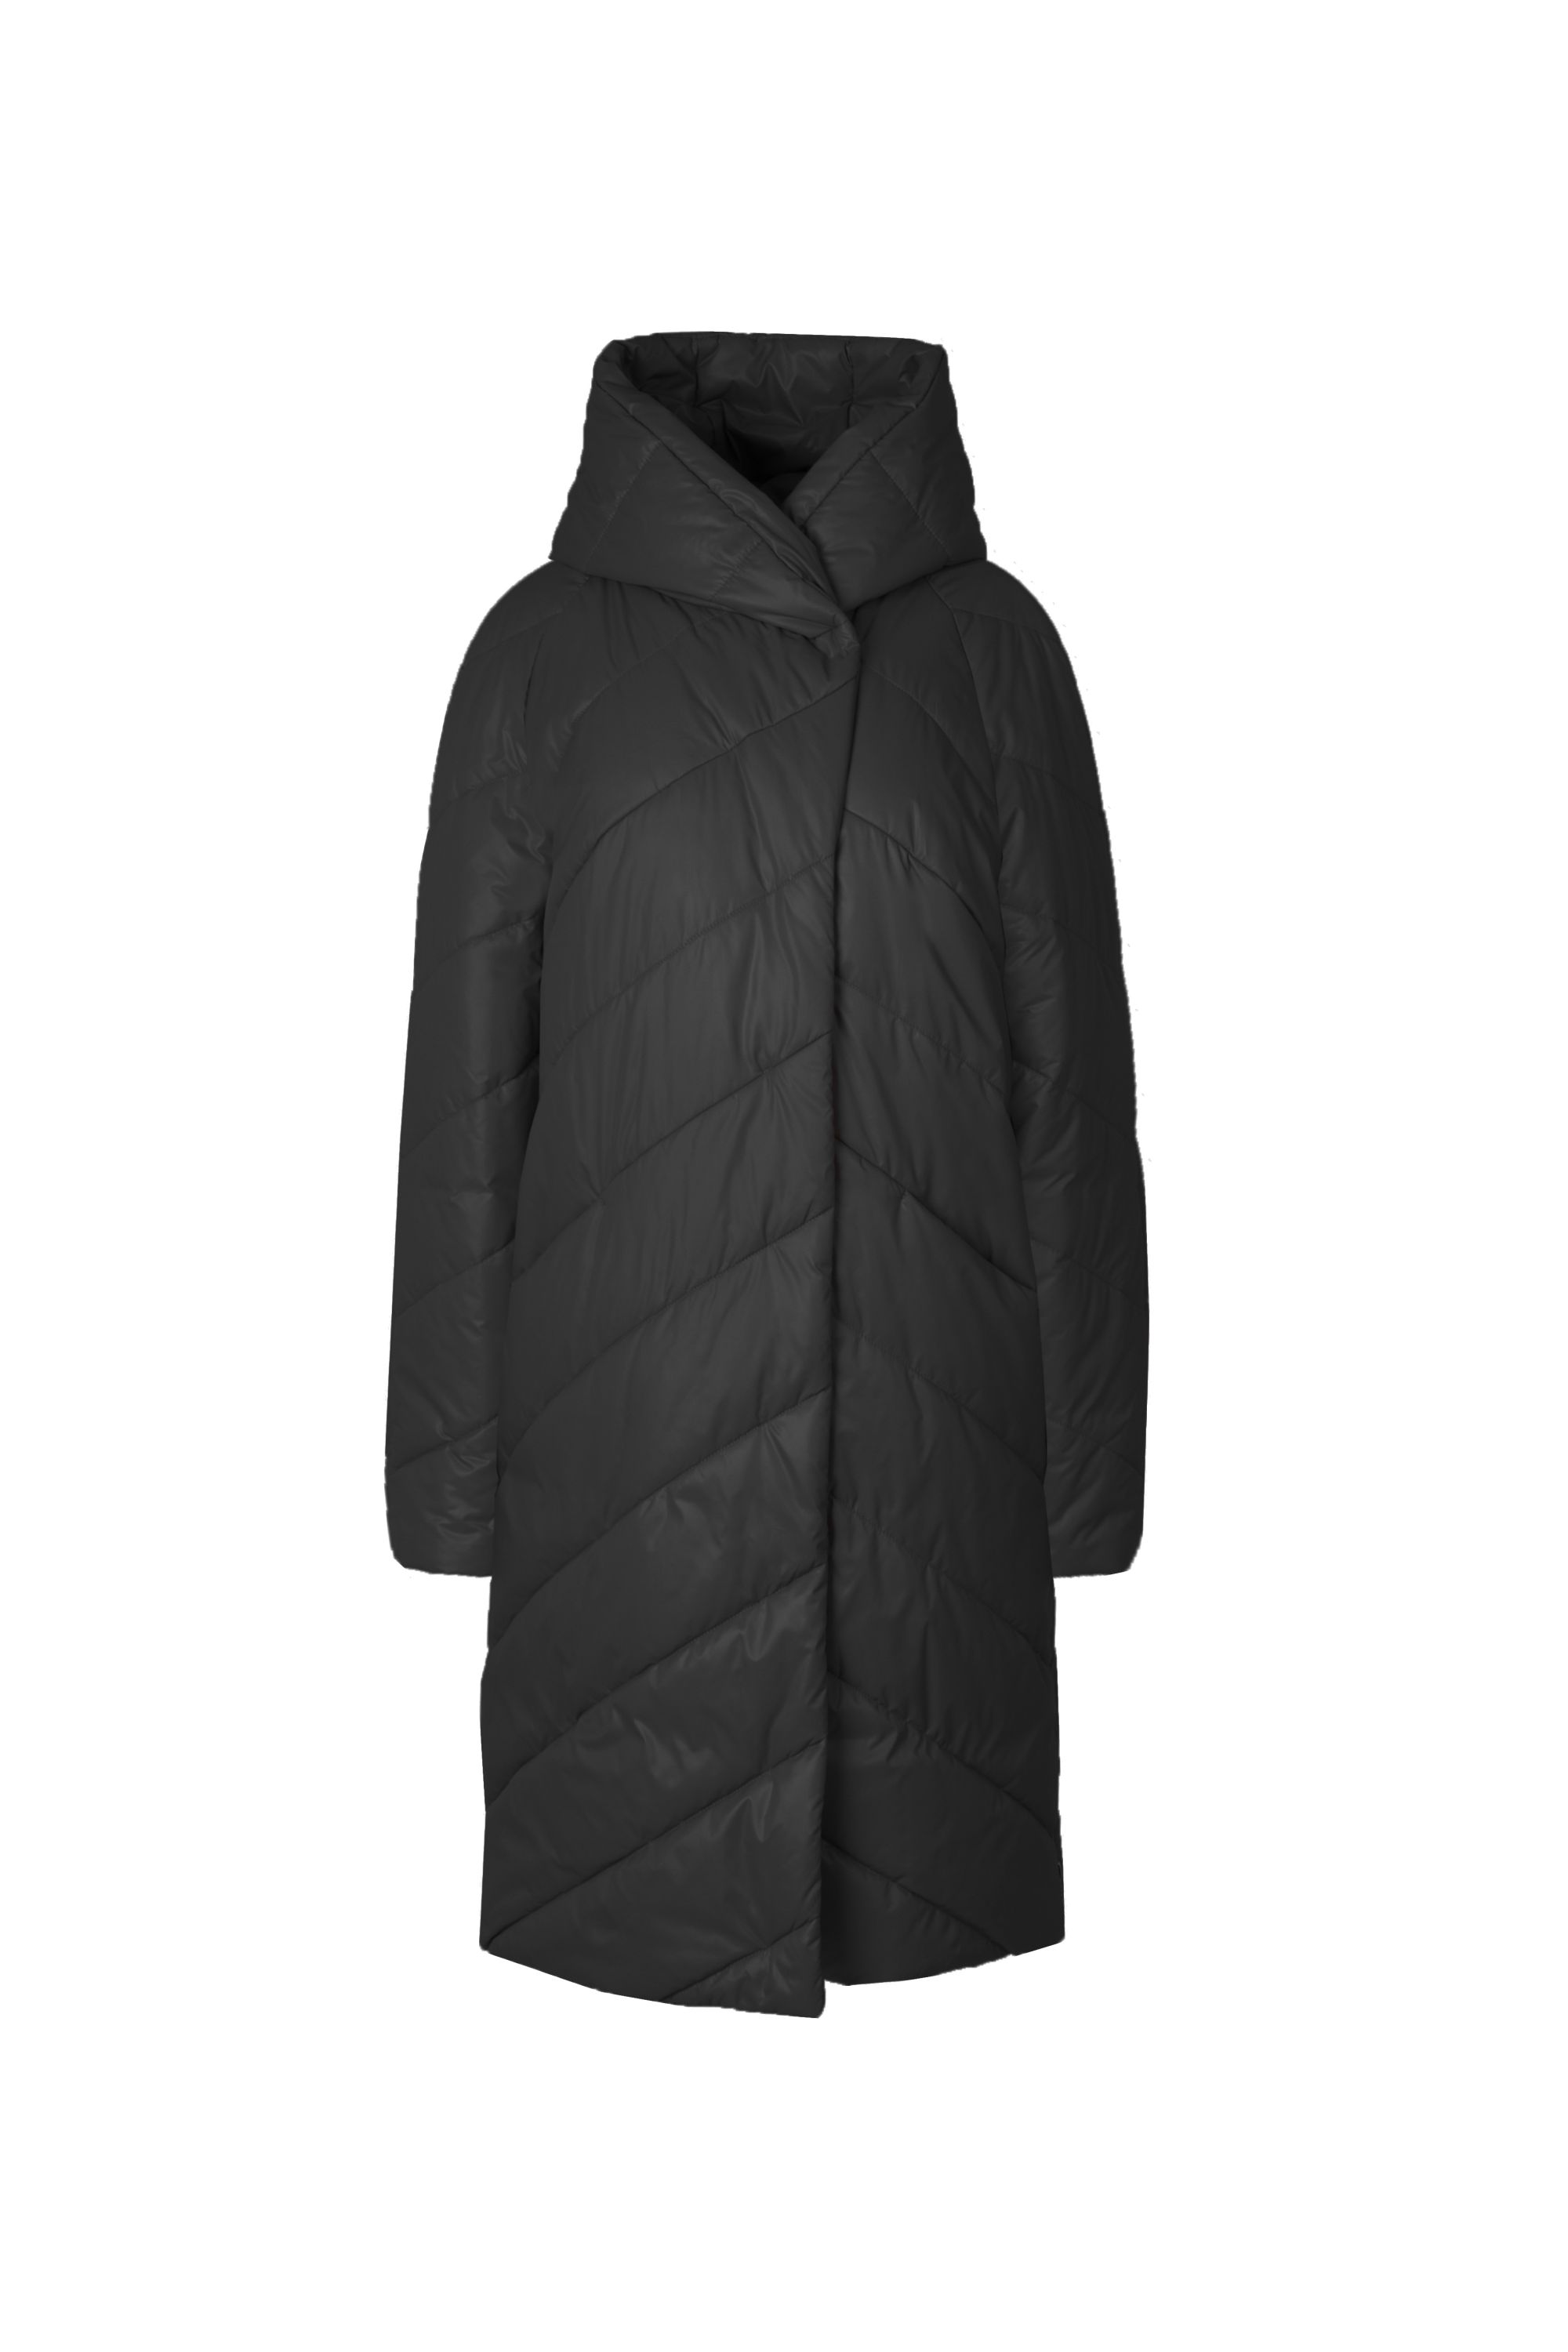 Пальто женское плащевое утепленное 5-12649-1. Фото 1.